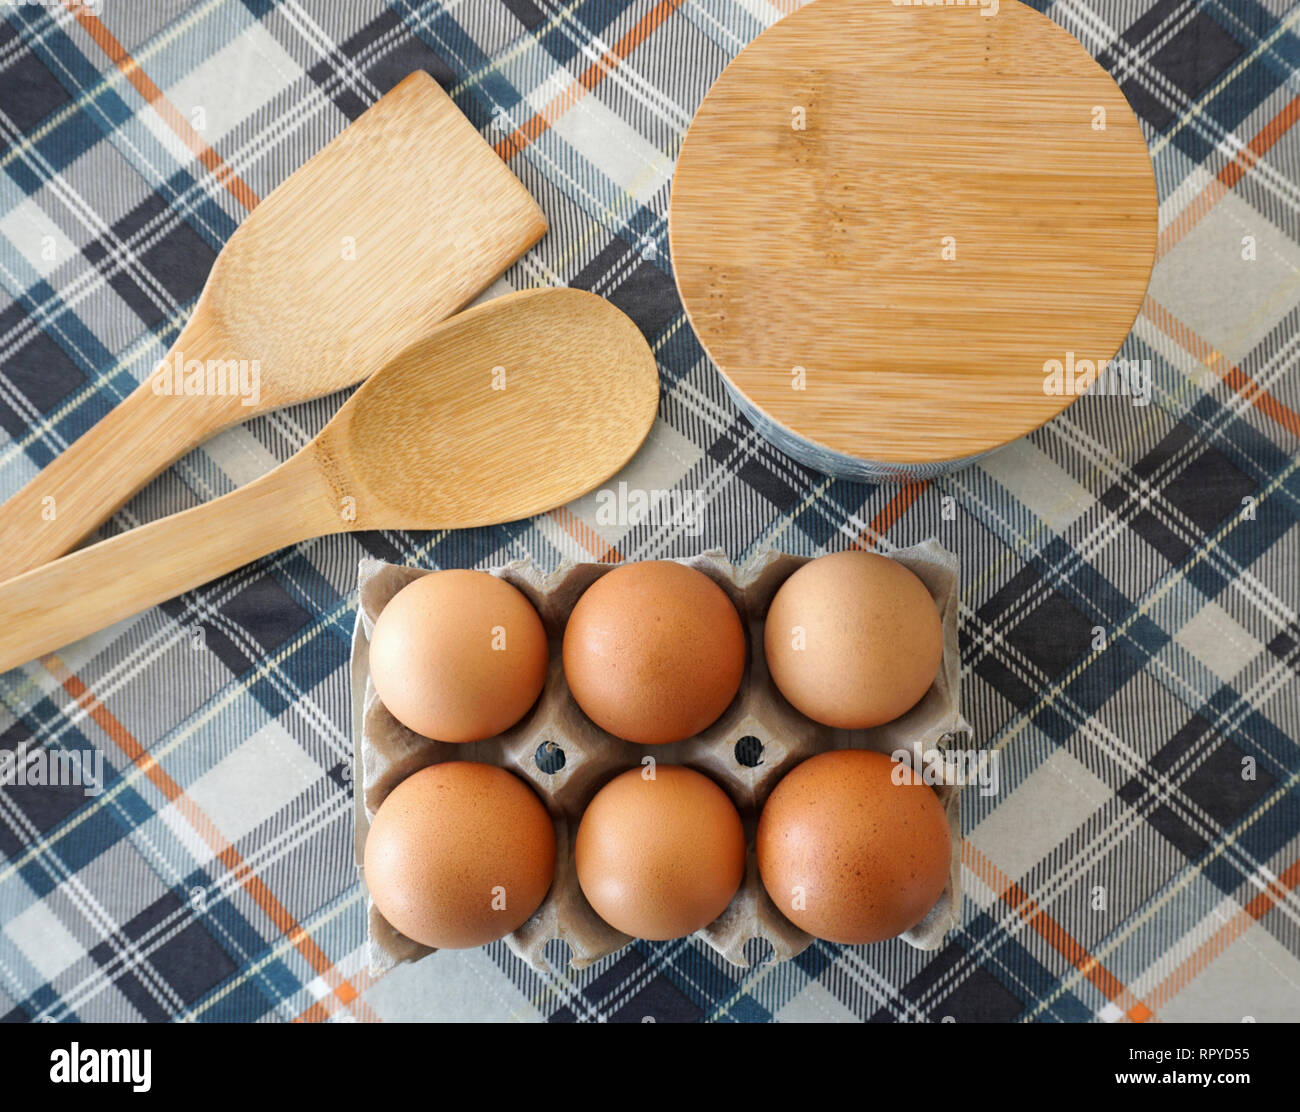 Accesorios de cocción de pasteles. Los huevos de pollo fresca cruda en caja  de huevo, cucharas de madera y contenedor de harina o azúcar Fotografía de  stock - Alamy